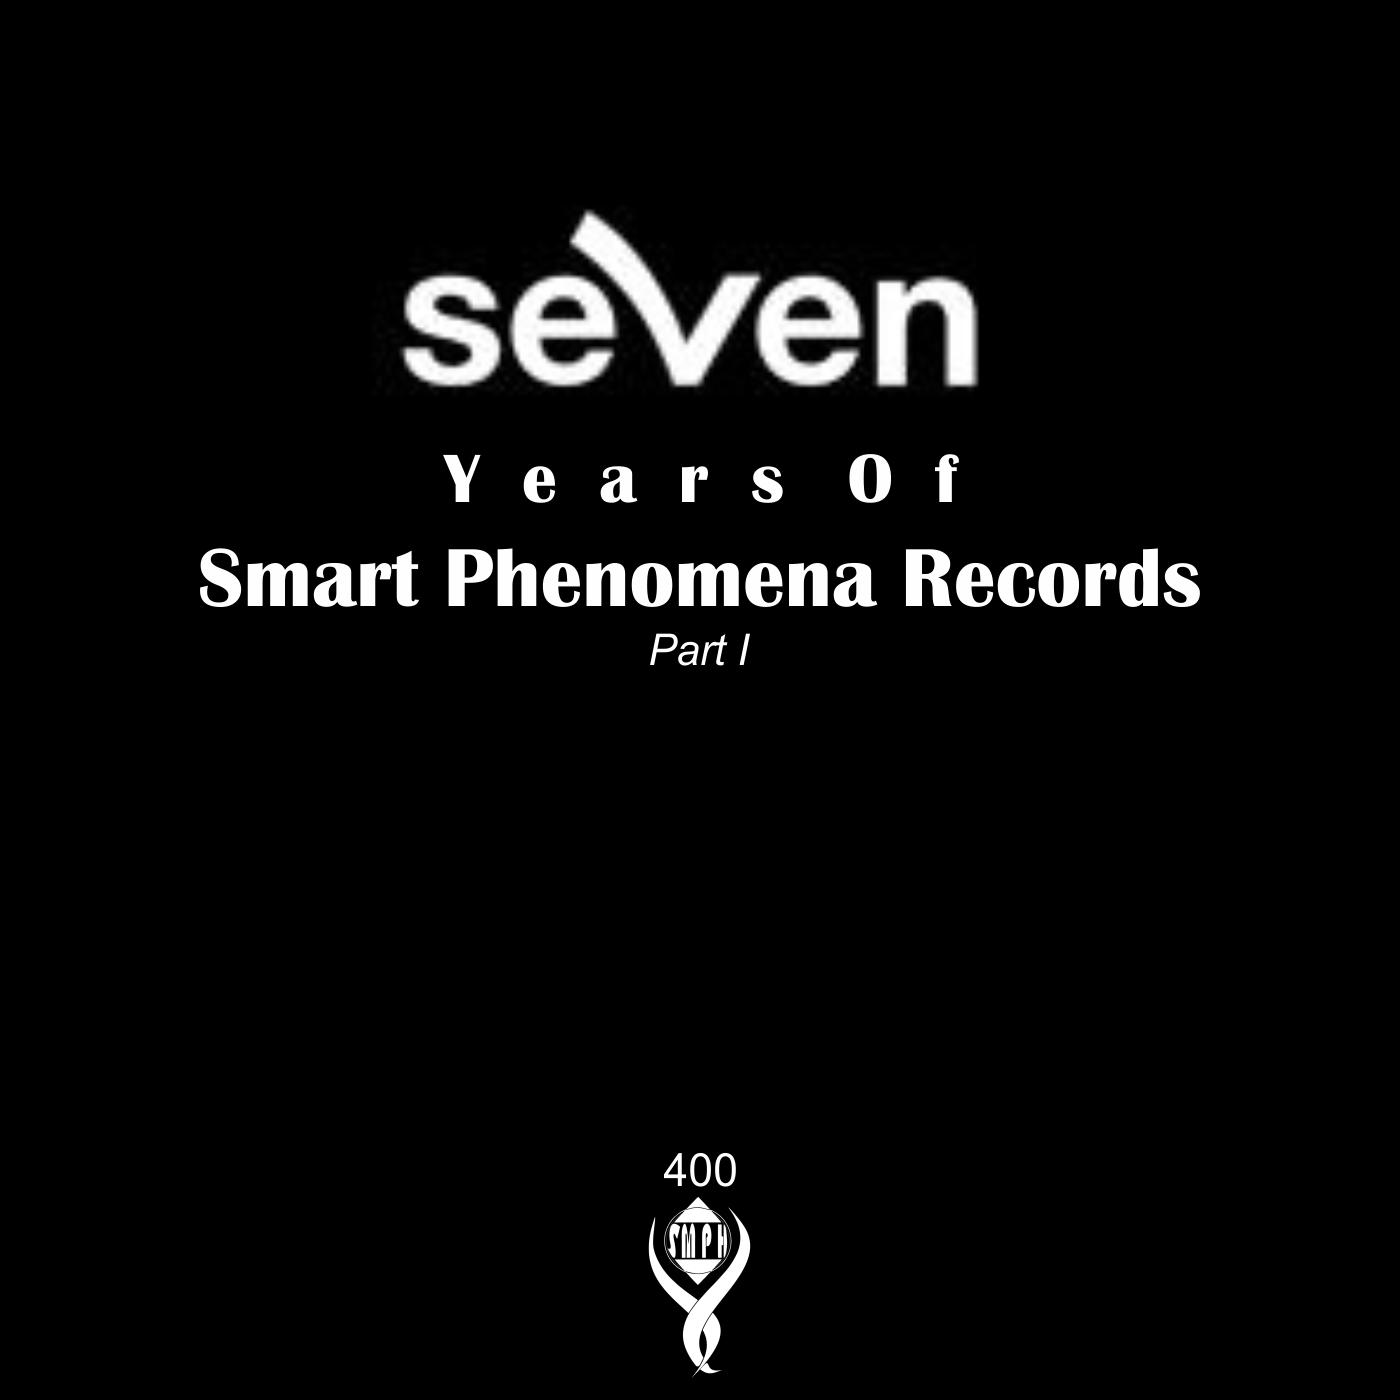 7 Years of Smart Phenomena Records/Part I